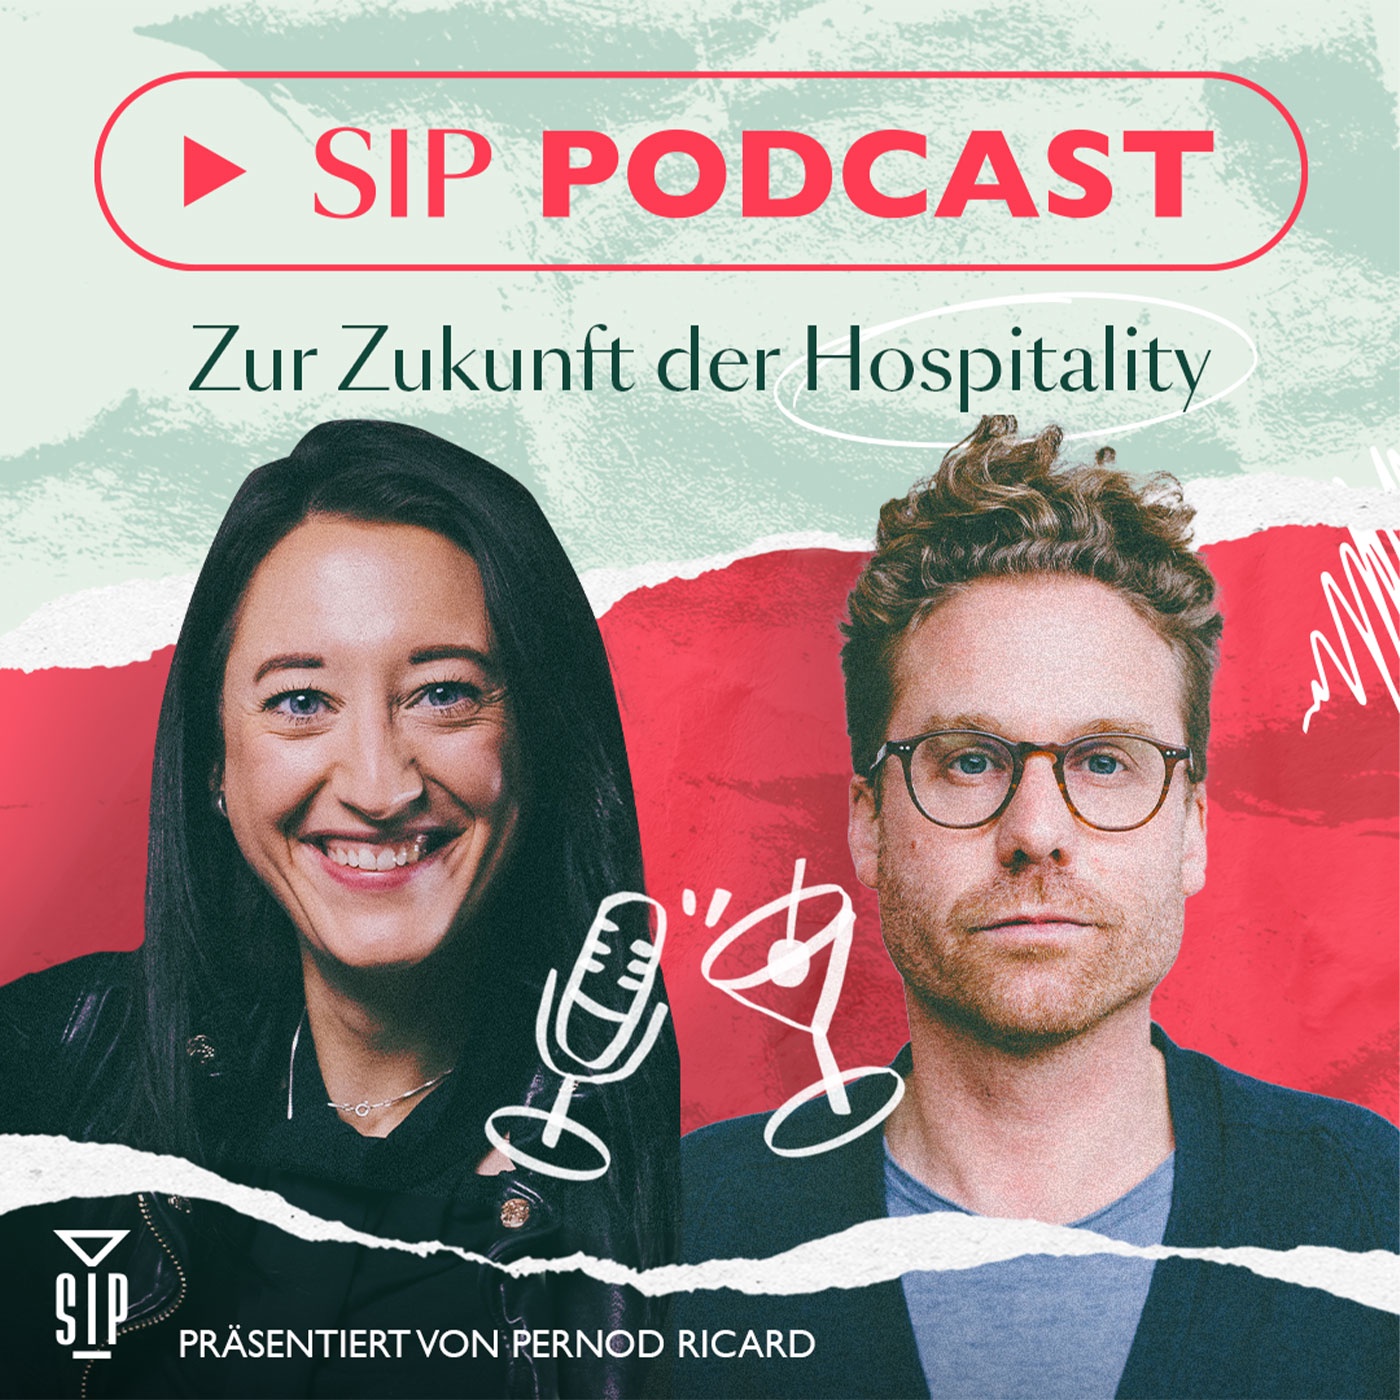 SIP PODCAST: Zur Zukunft der Hospitality.